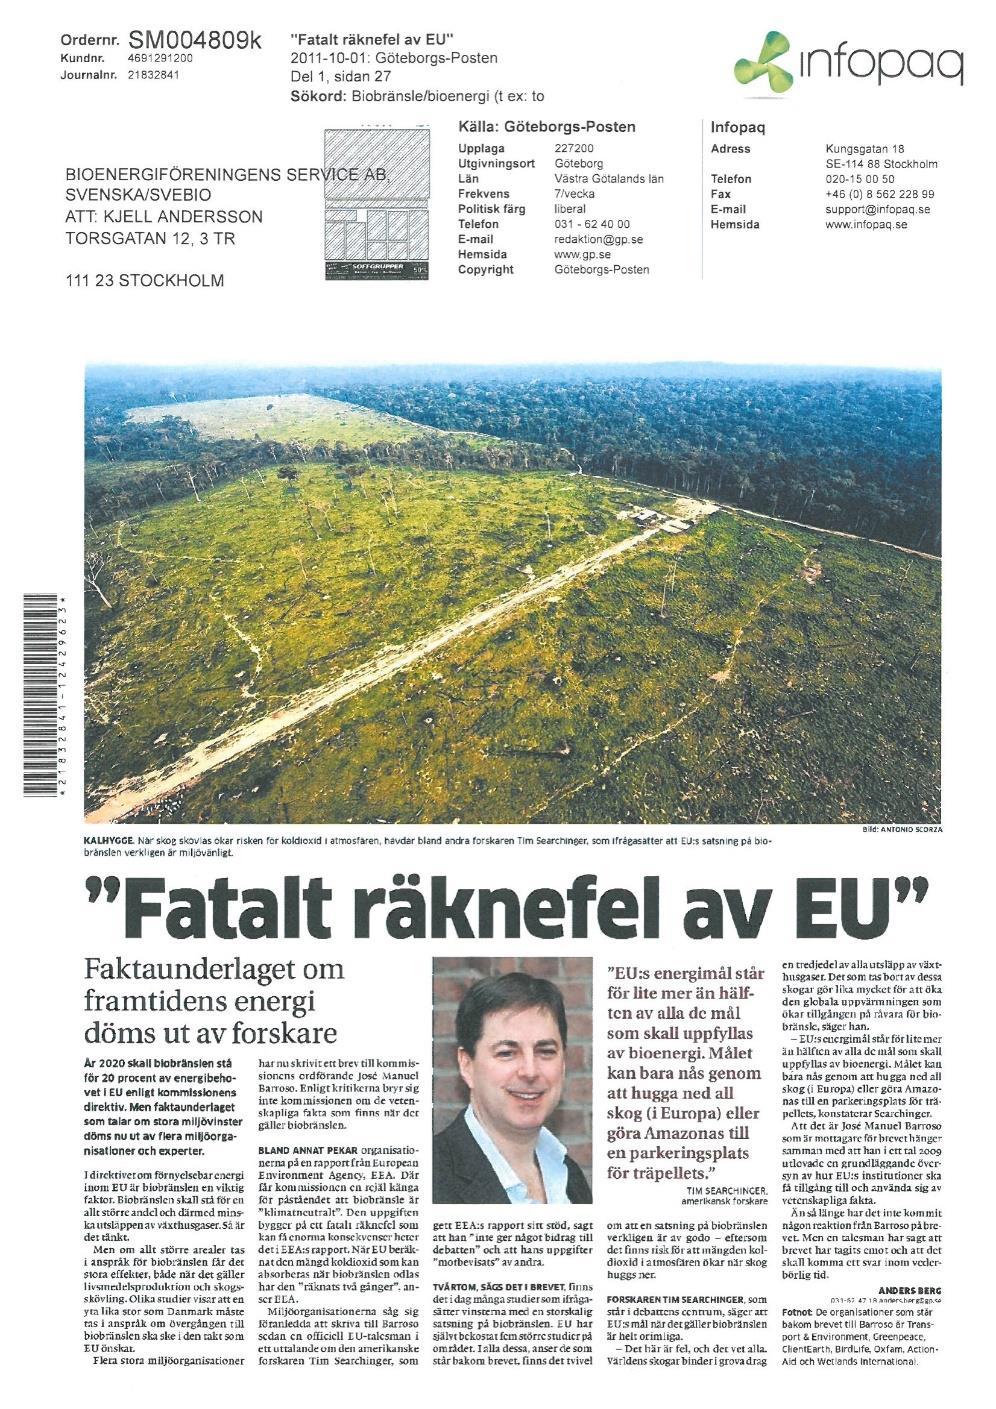 Göteborgs-Posten 1 okt 2011 Målet kan bara nås genom att hugga ned all skog i Europa eller att göra Amazonas till en